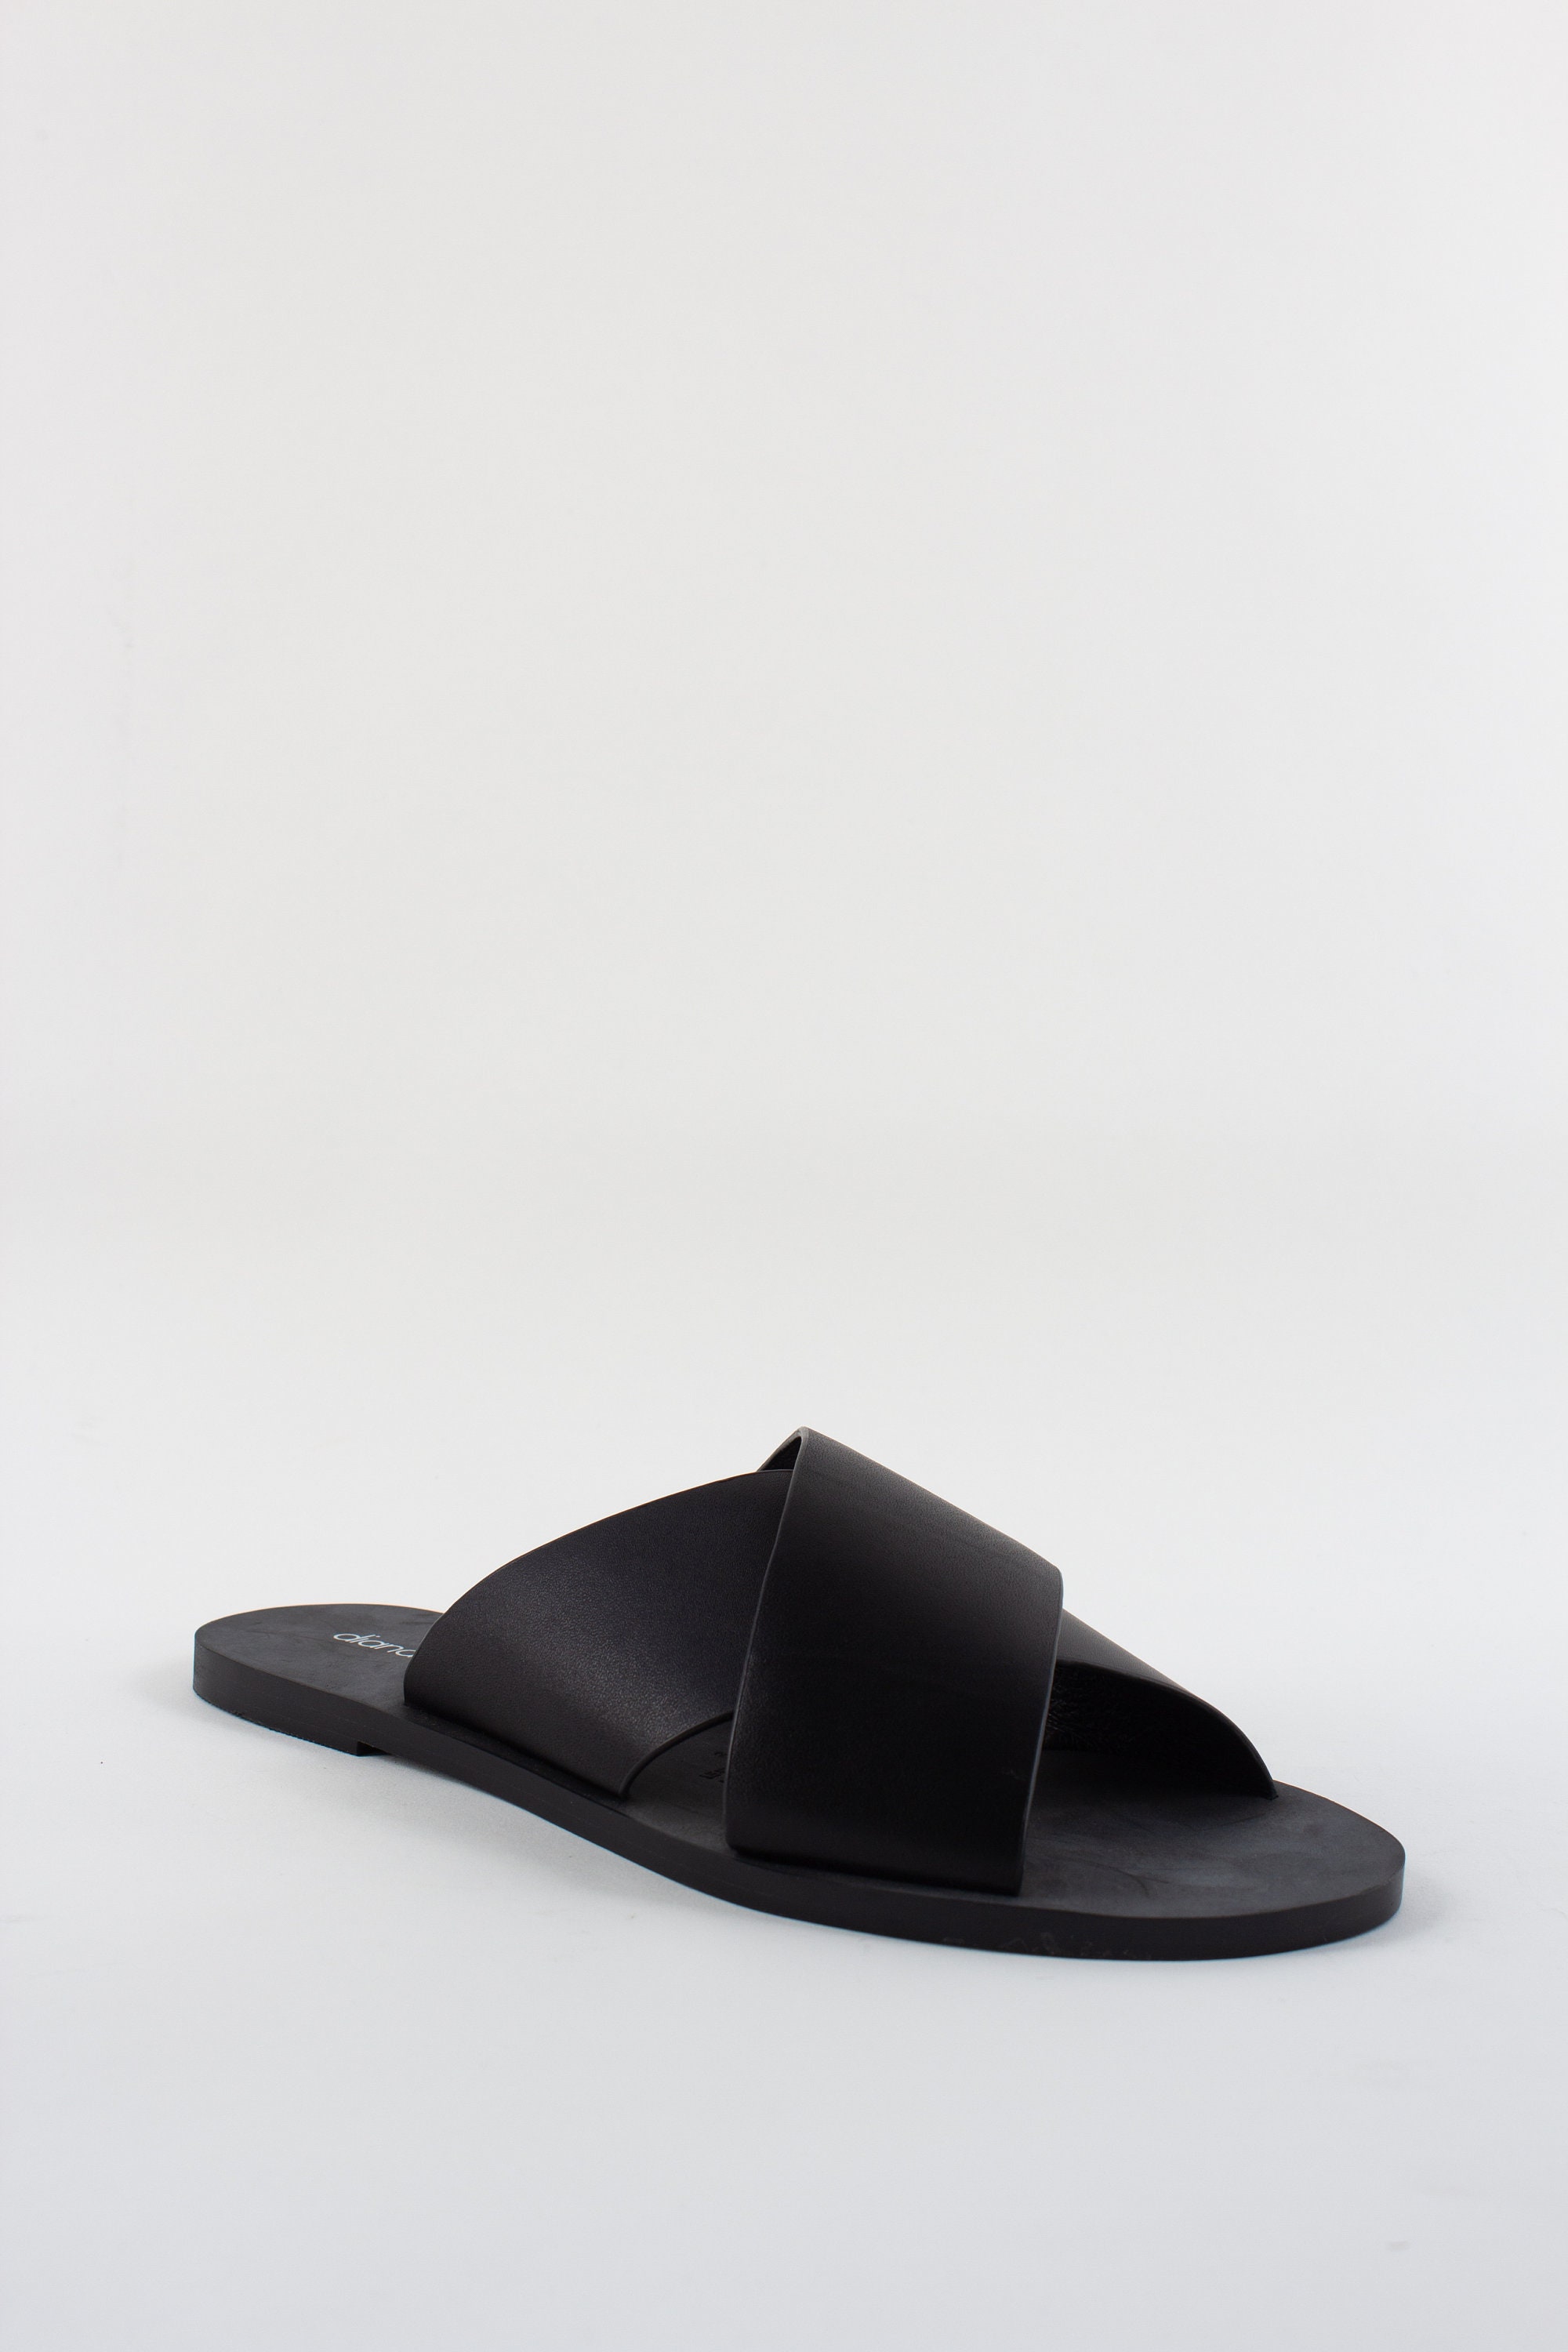 Vintage Black Leather Slides Slip on Sandals Summer Shoes - Etsy